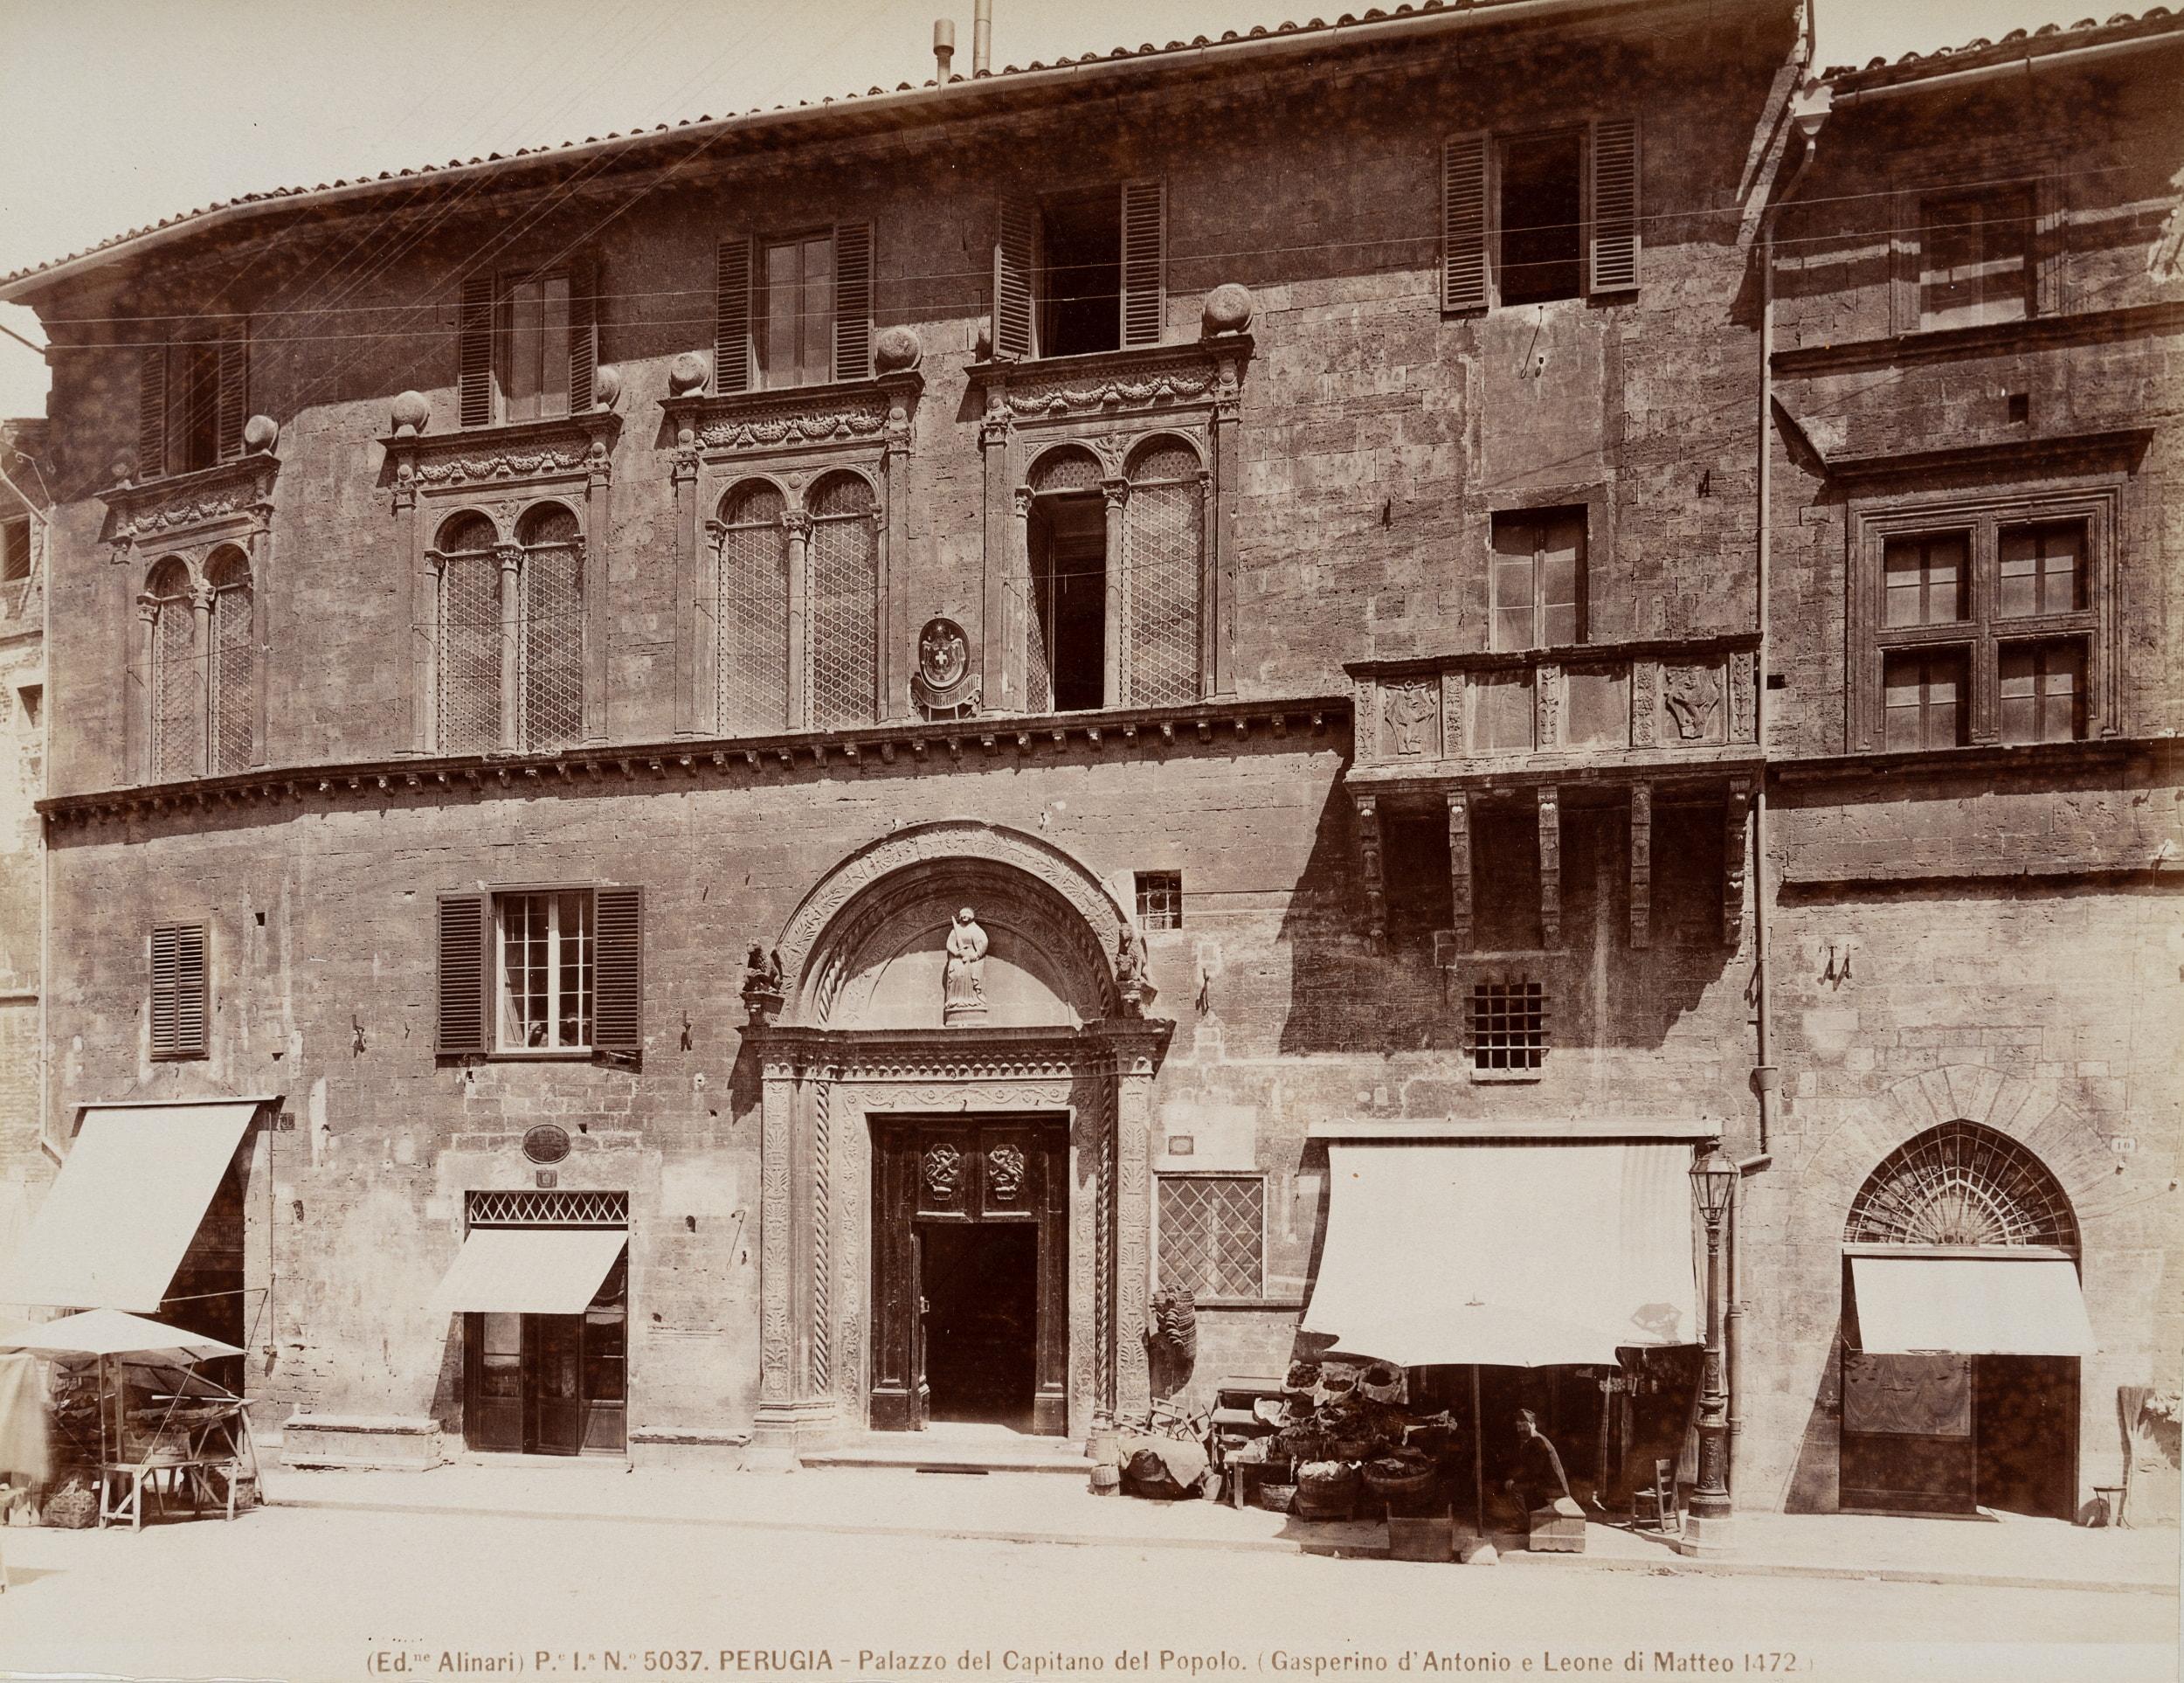 Fratelli Alinari Landscape Photograph - Palazzo del Capitano del Popolo, Perugia